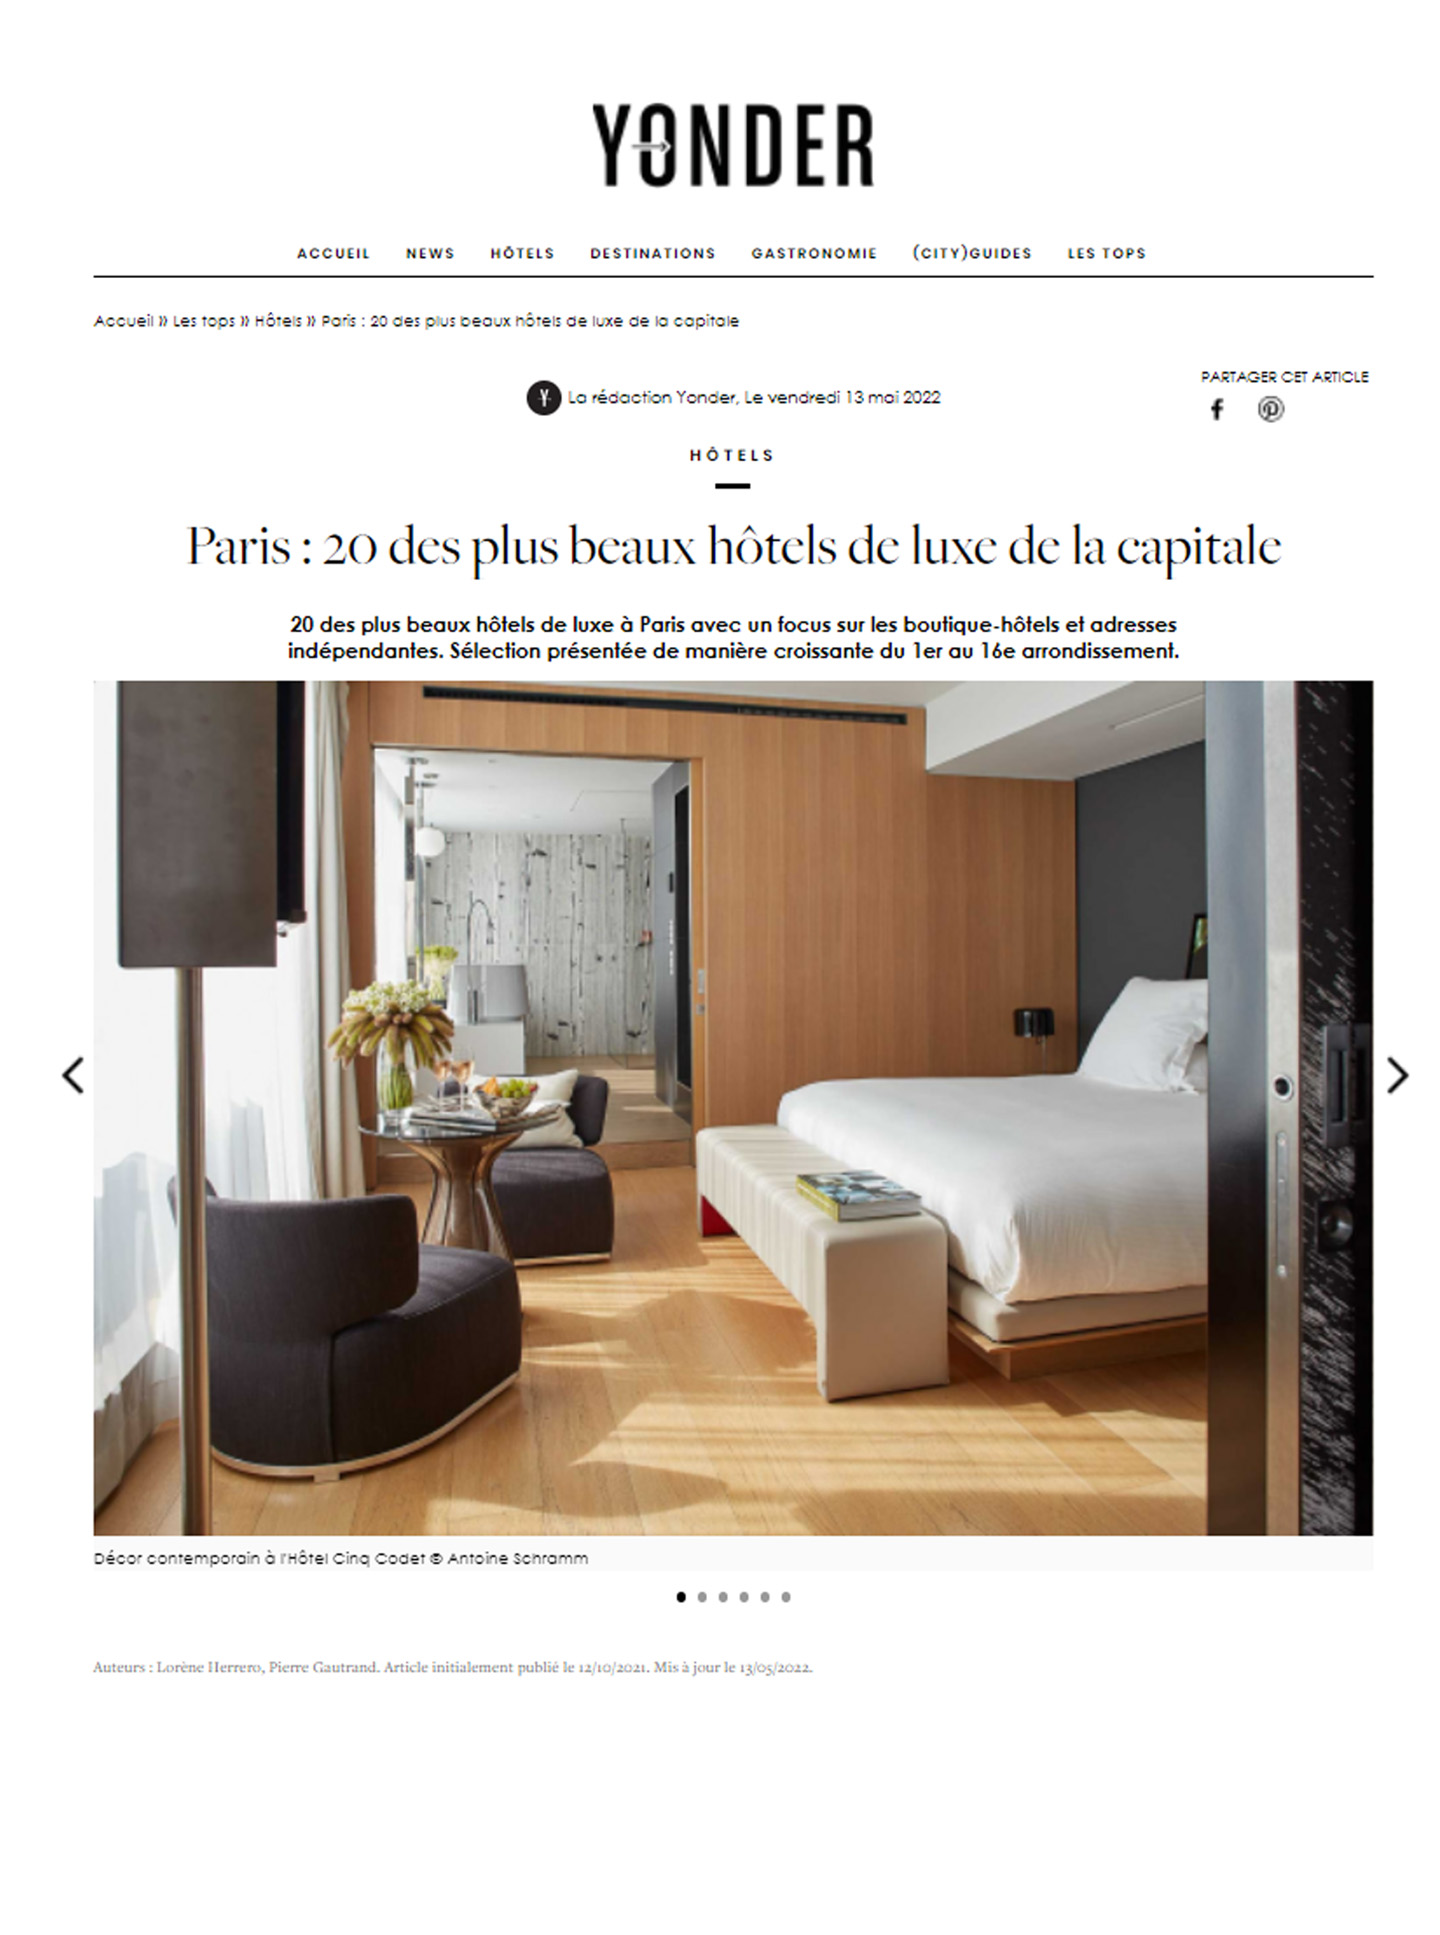 Article sur les projets du studio d'architecture d'intérieur jean-philippe nuel dans le magazine yonder et sur le succès de l'hôtel Lancaster 5 étoiles à paris